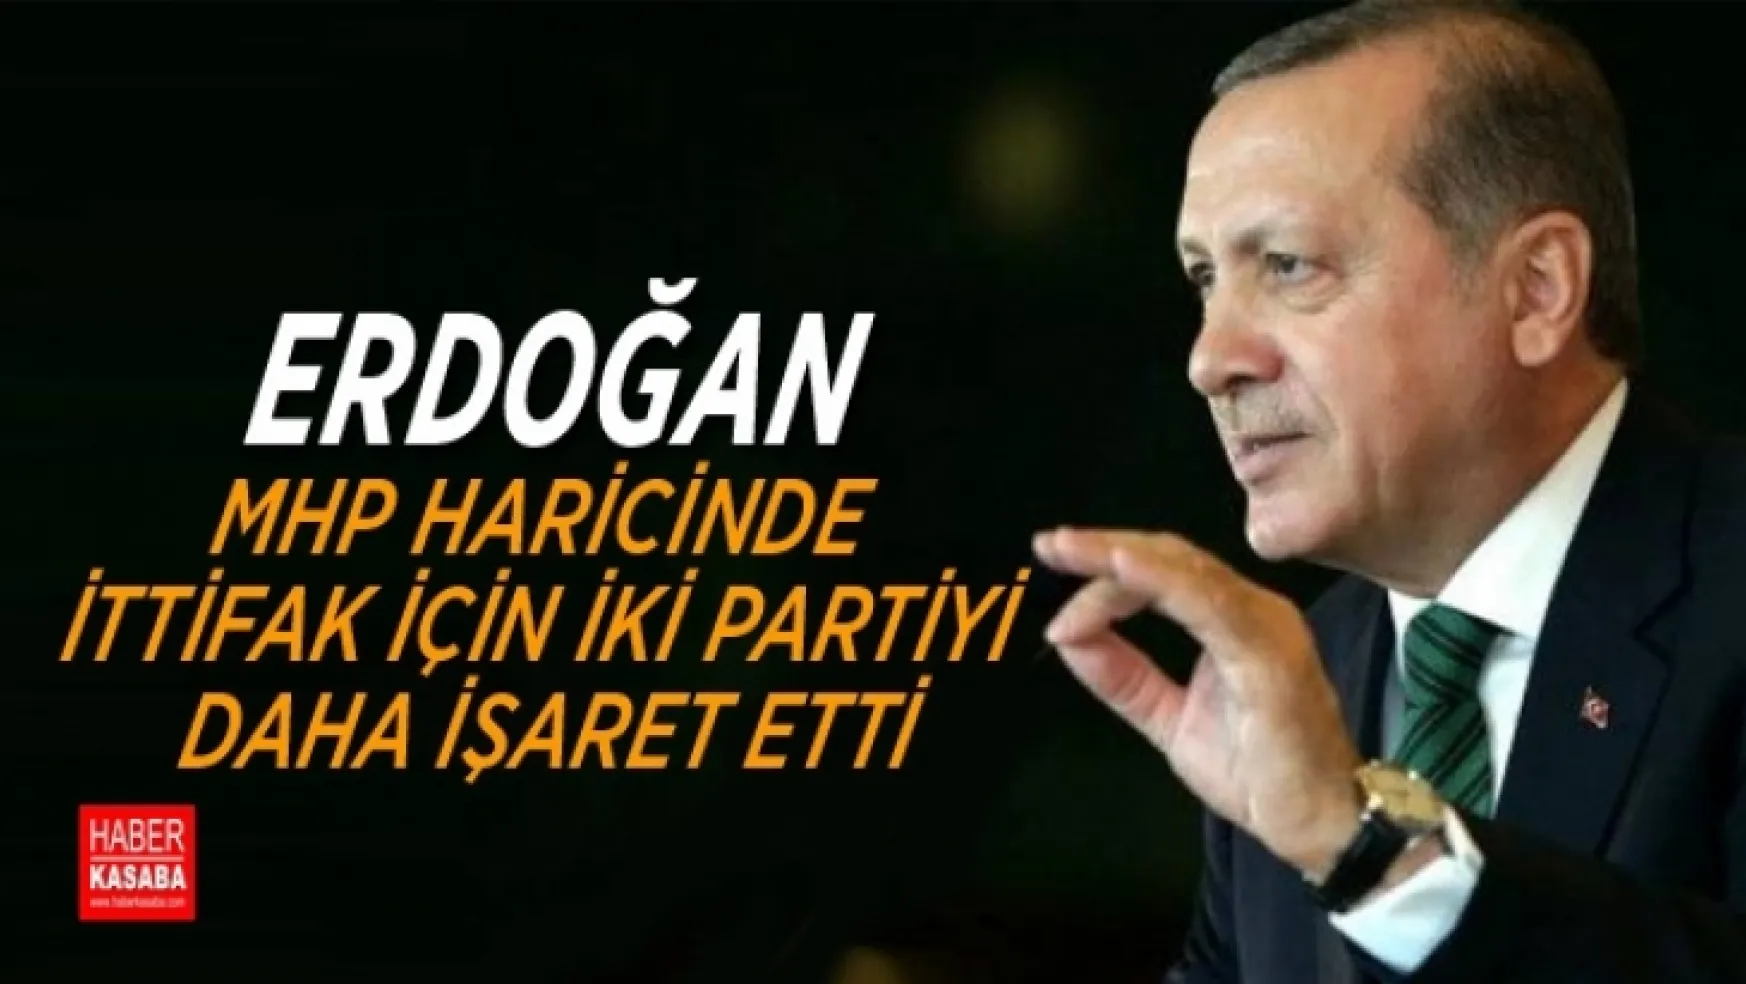 Erdoğan ittifak için iki partiyi daha işaret etti